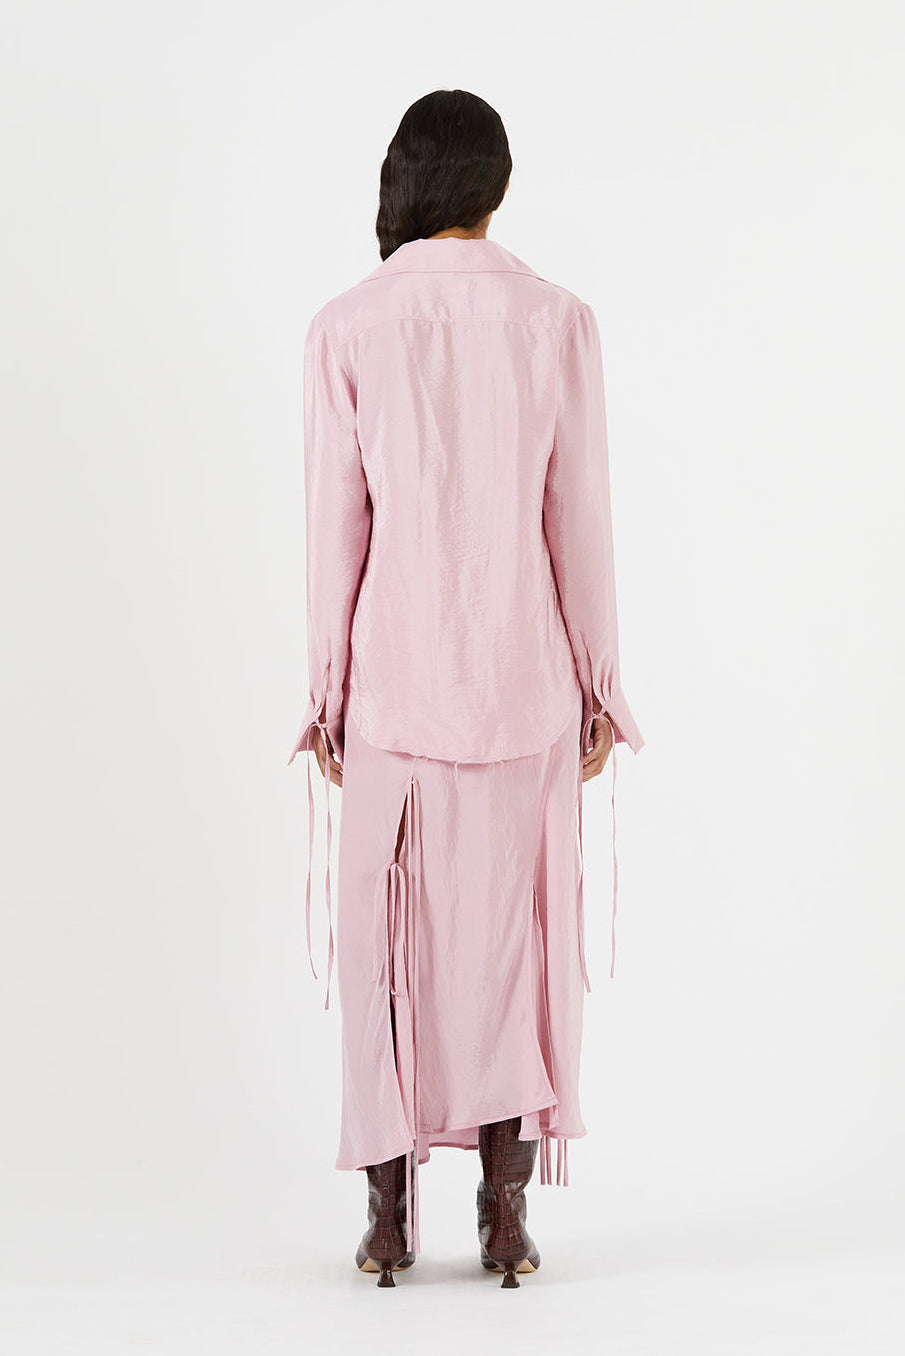 Saskia Shirt in Pink by Rejina Pyo